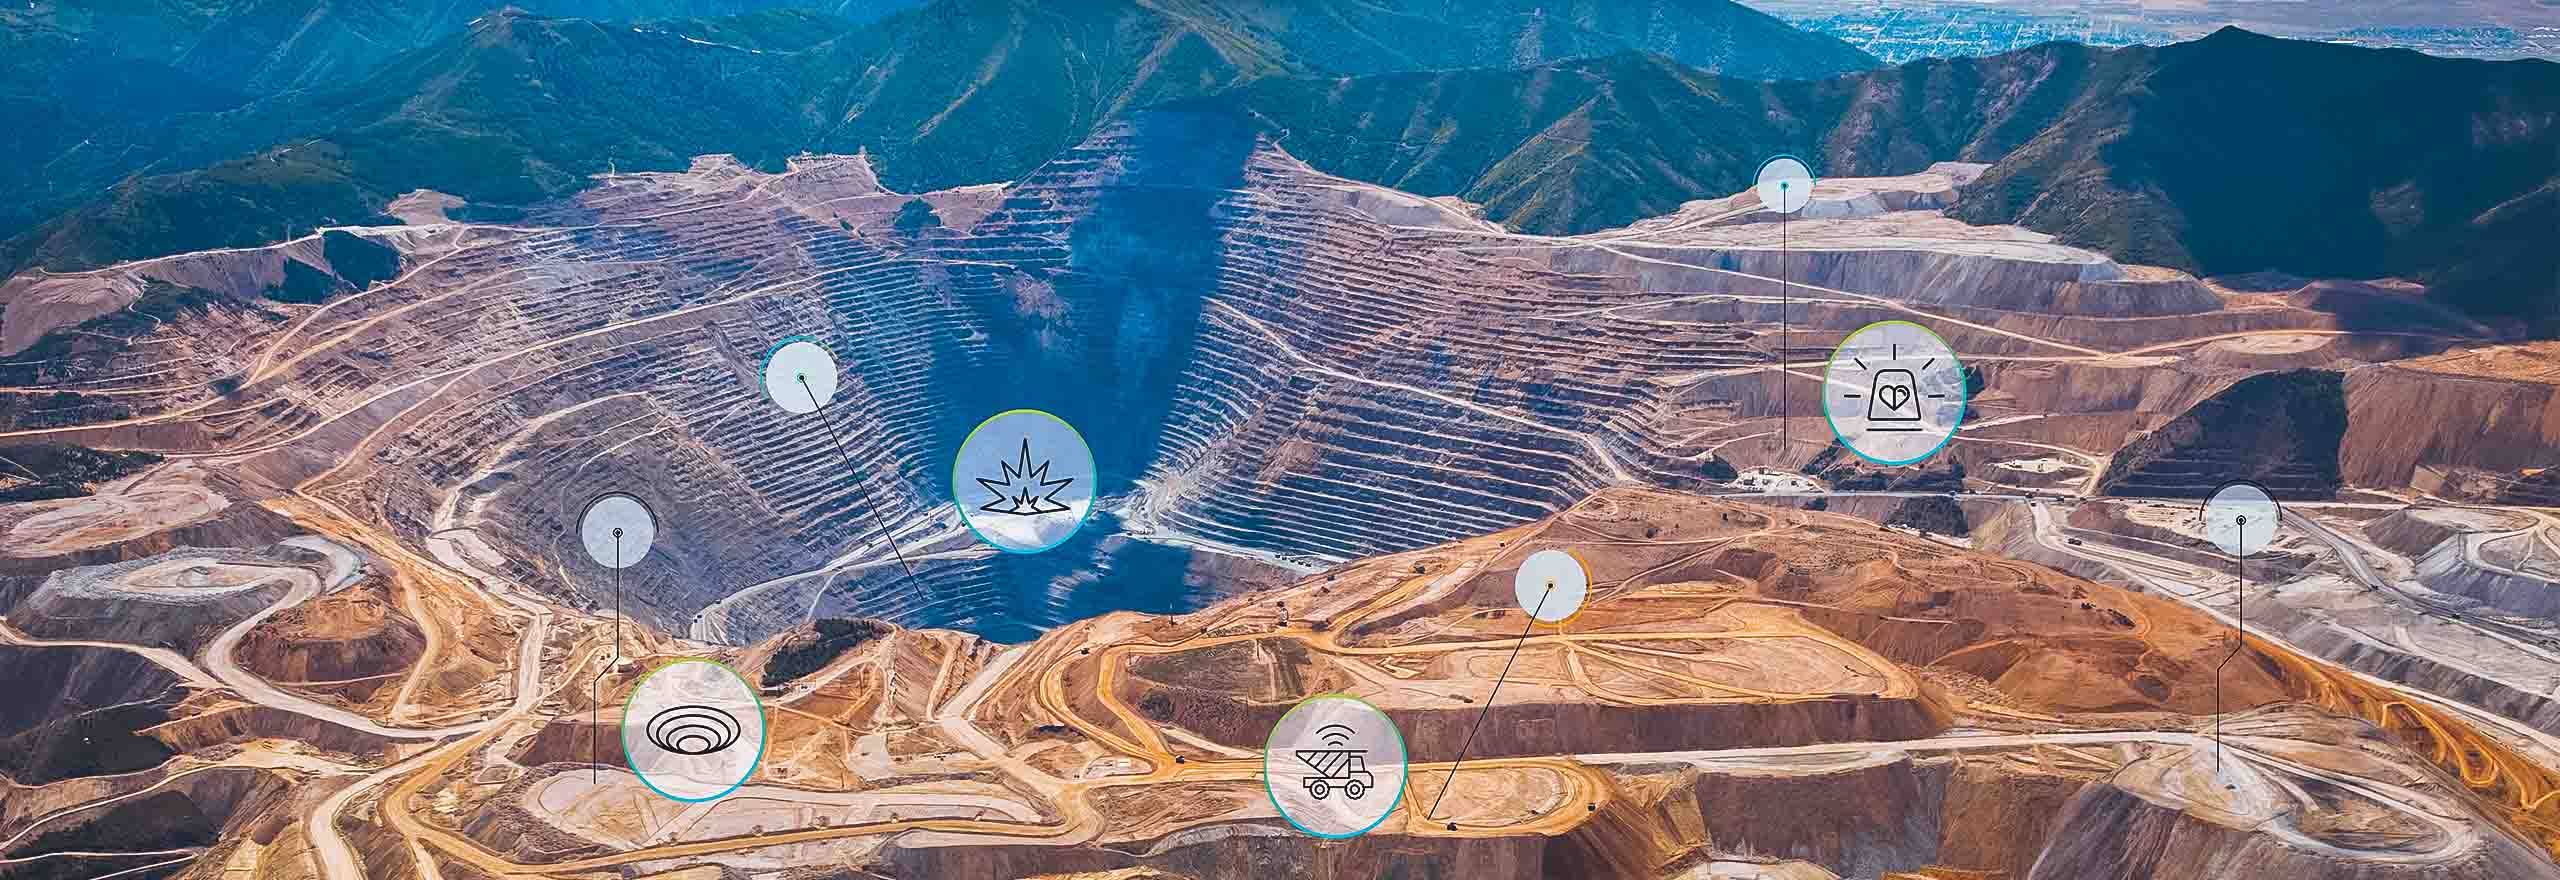 vue aérienne d’une mine à ciel ouvert avec superposition de technologies 